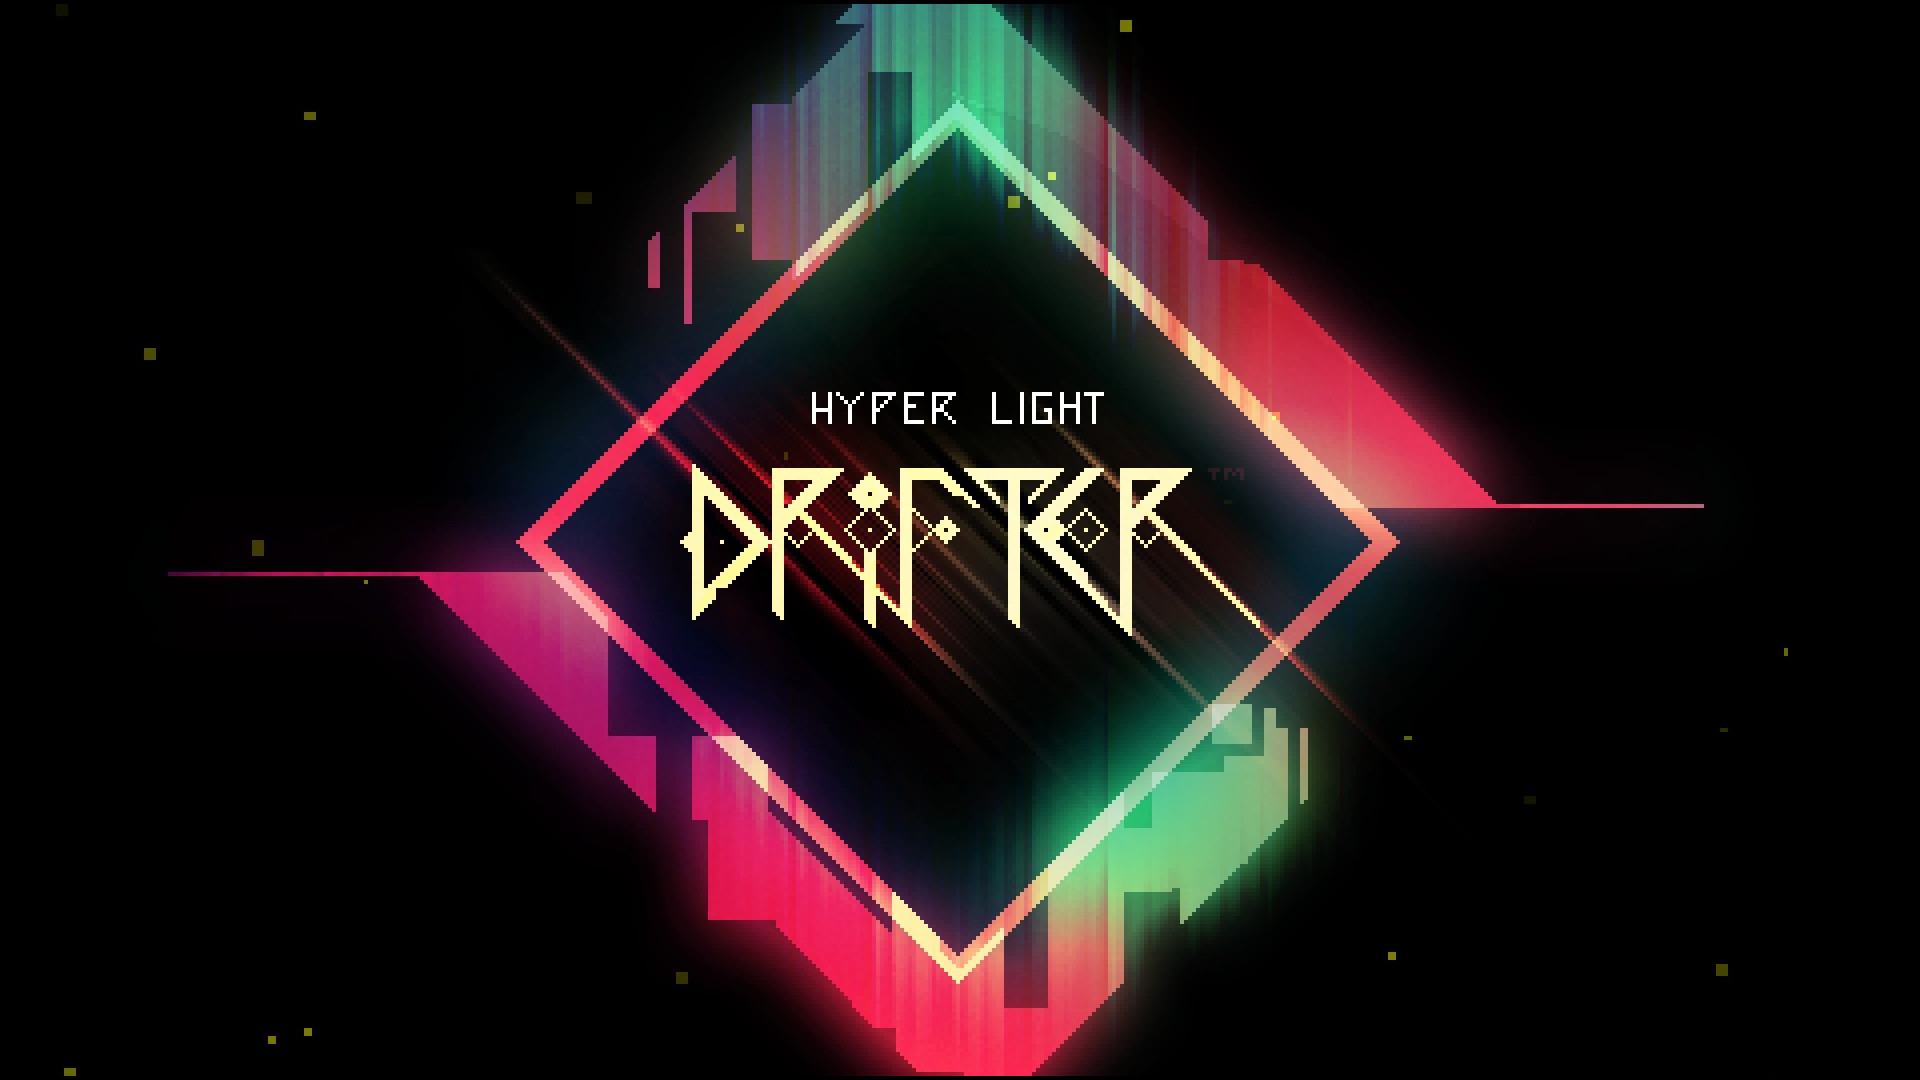 kickstarter hyper light drifter